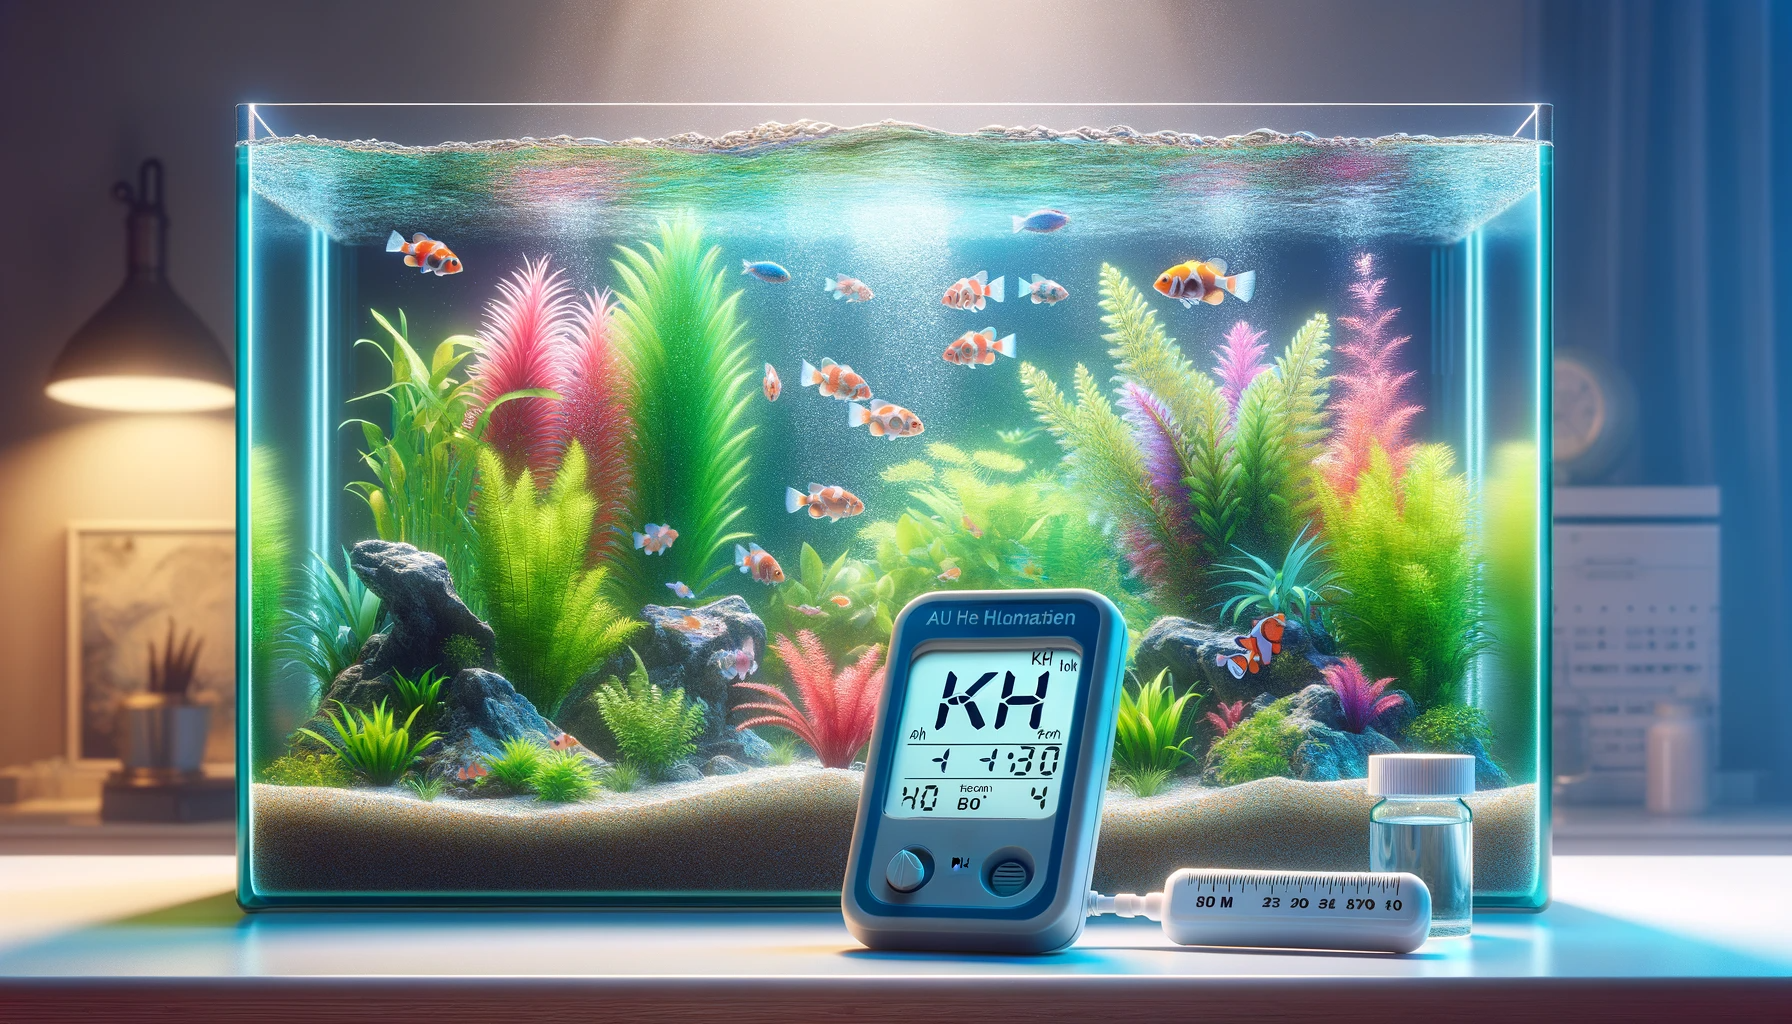 How to increase kh level in aquarium